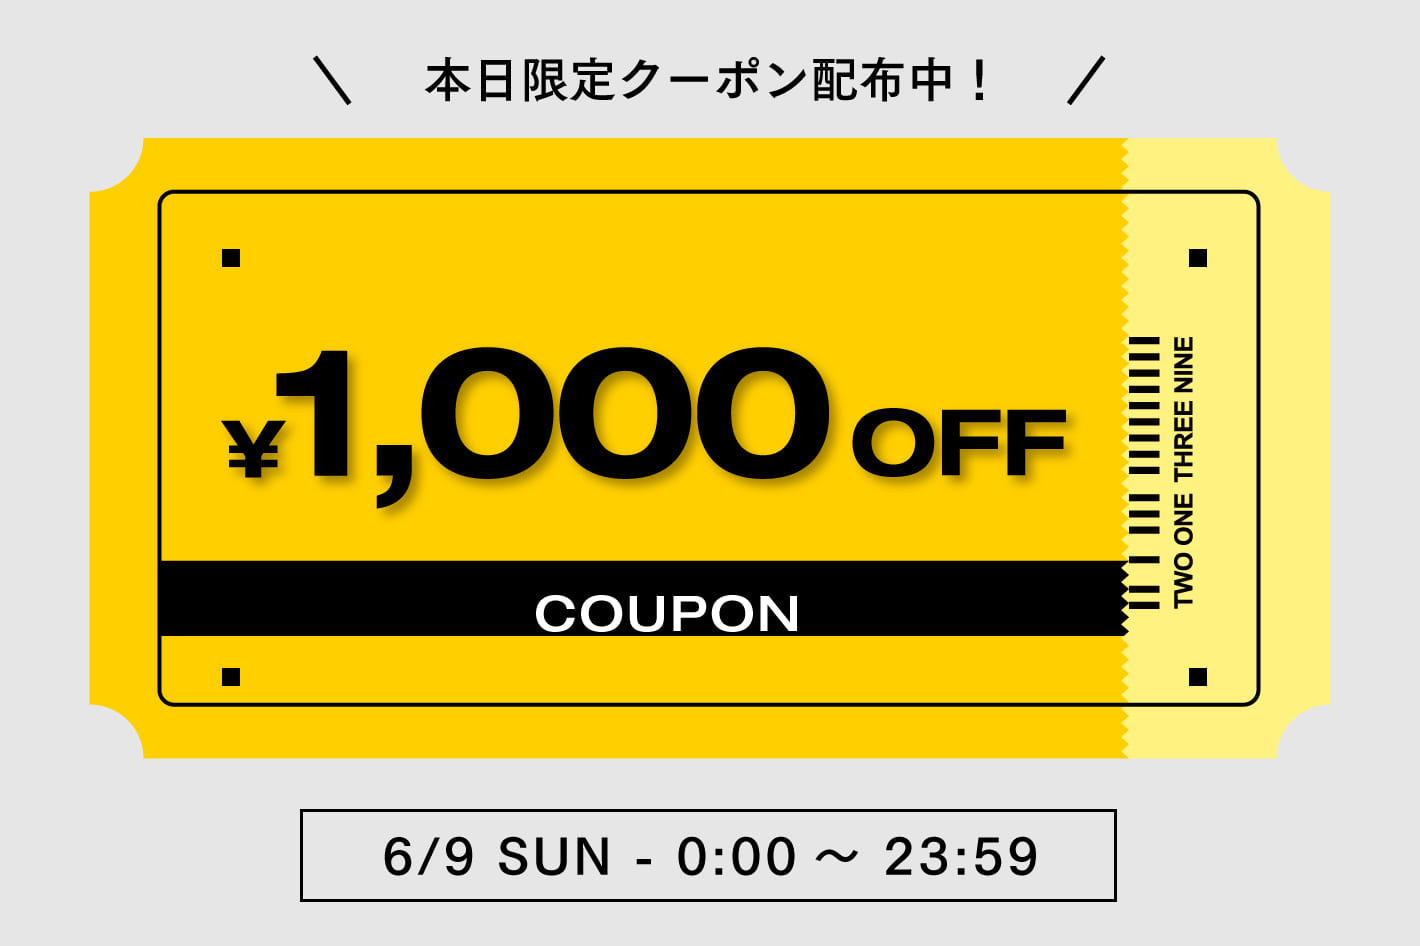 【COLONY 2139】1,000円OFFクーポン